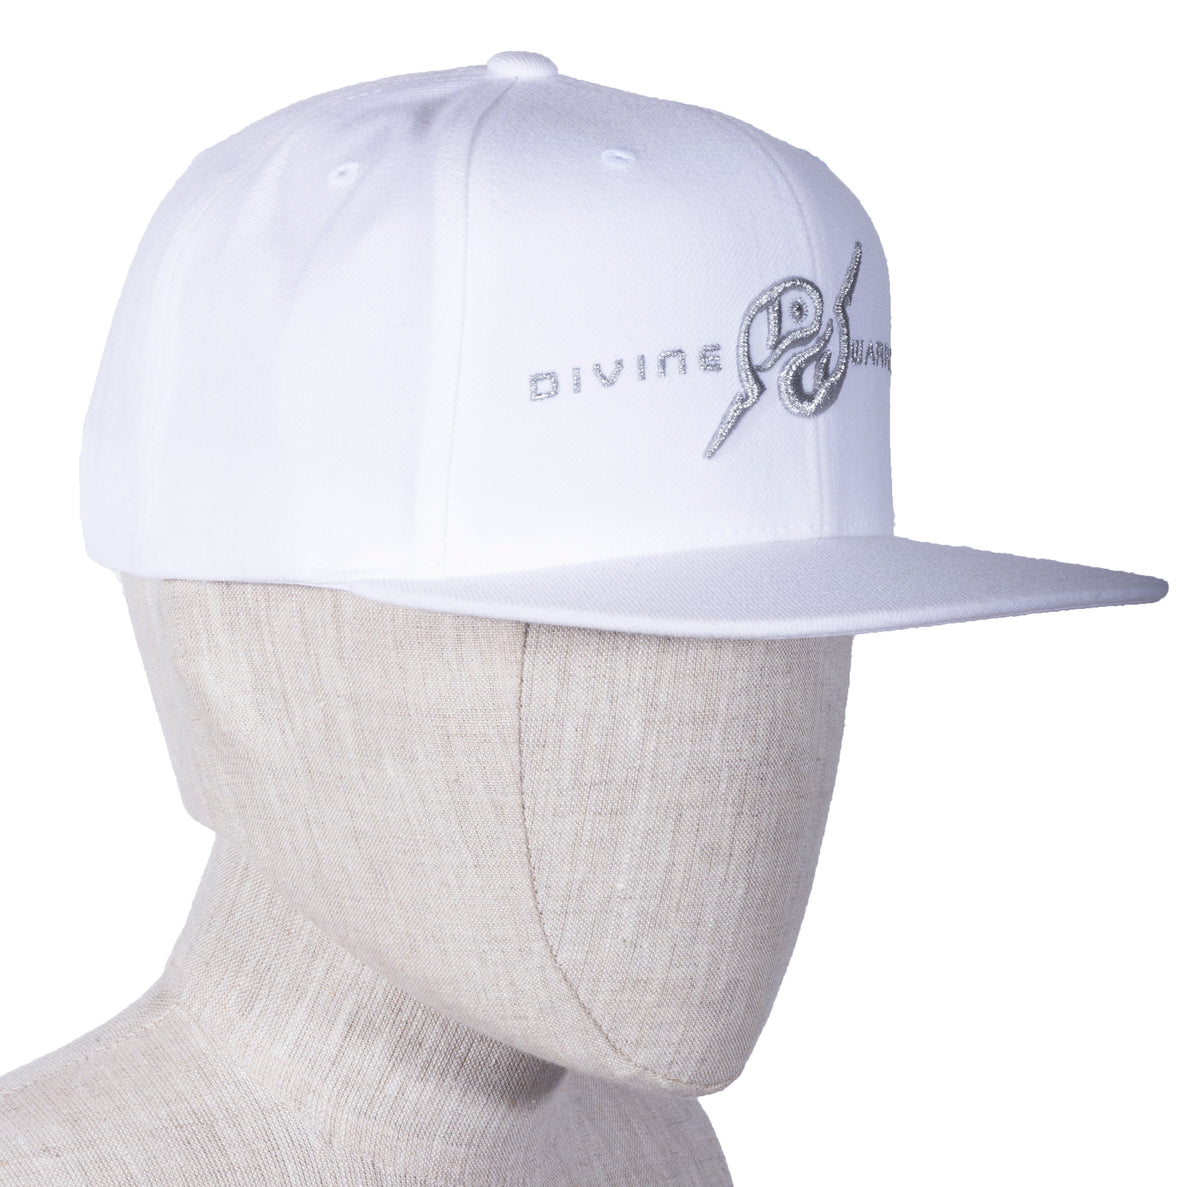 MIRARI® // Divine Warrior® Collection, White Silver Hat